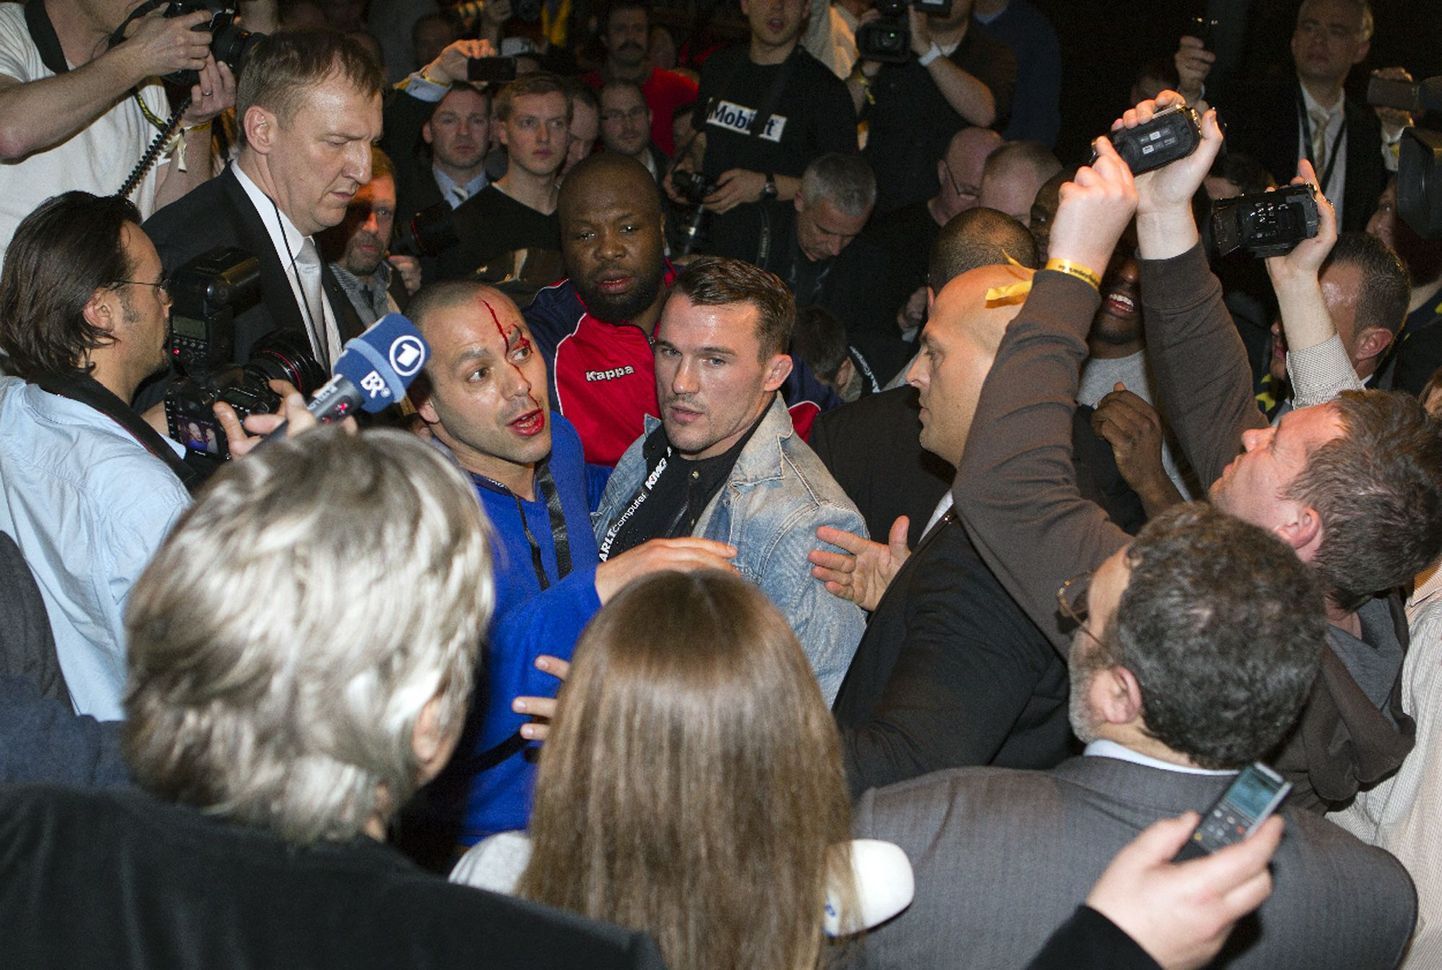 Менеджер Хэя Адам Бут (в синем) пострадал, разнимая боксеров.